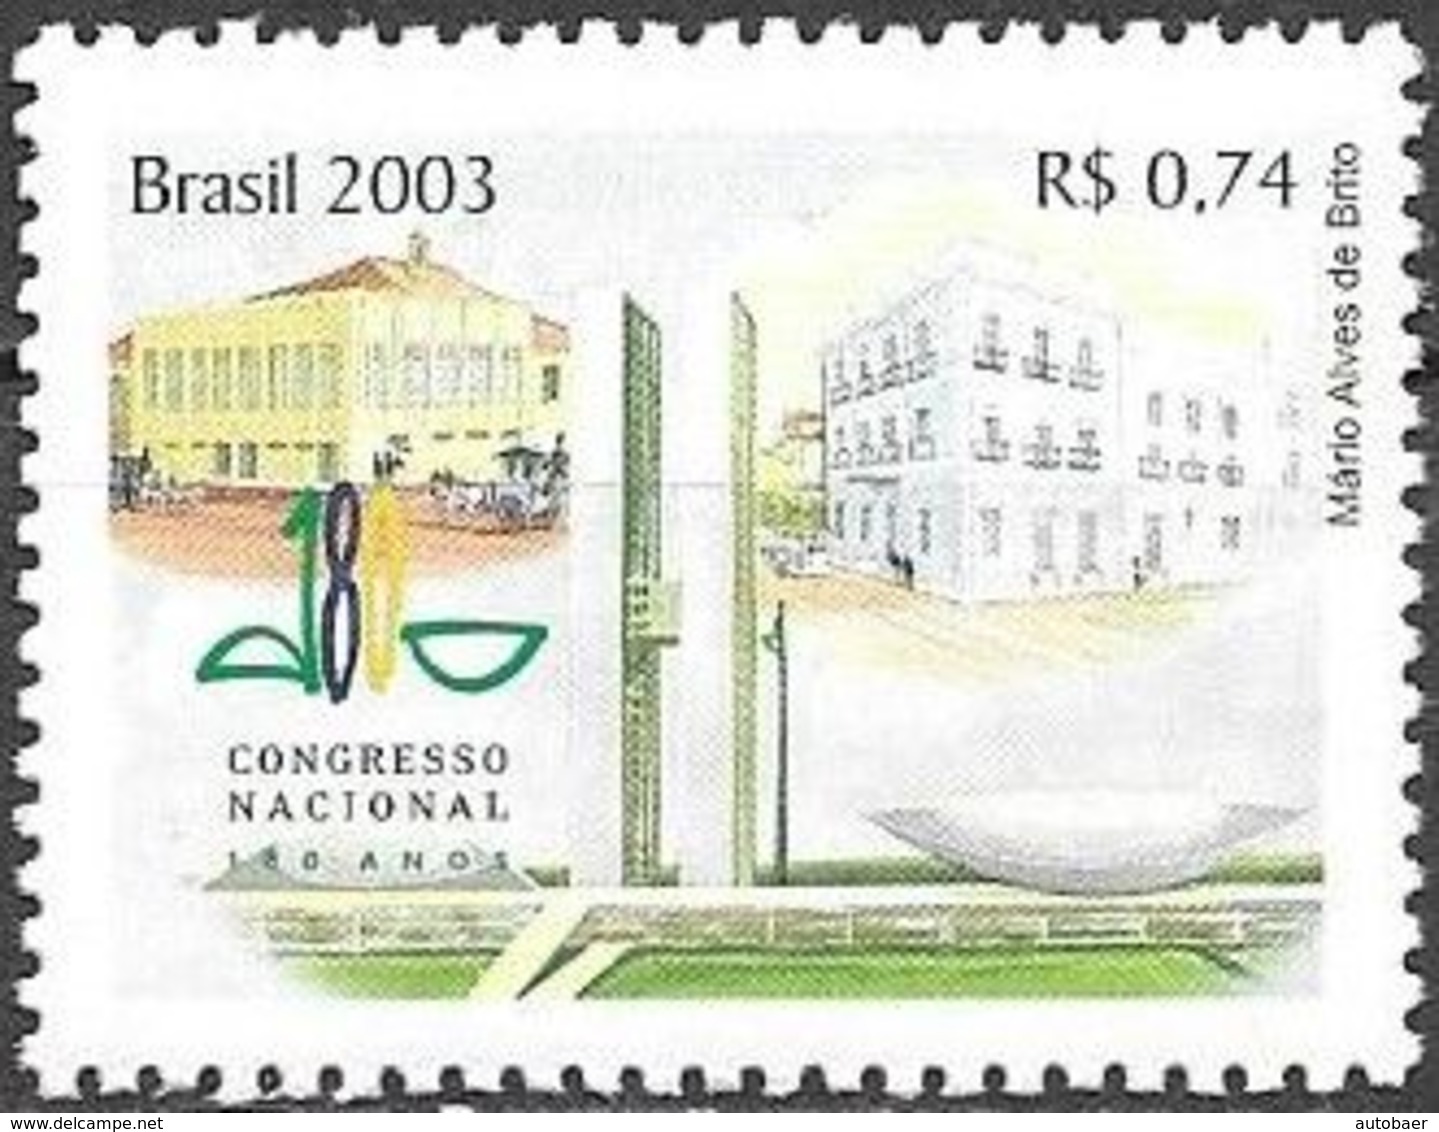 Brazil Brasil Brasilien 2003 National Congress Michel No. 3336 MNH Mint Postfrisch Neuf ** - Ungebraucht